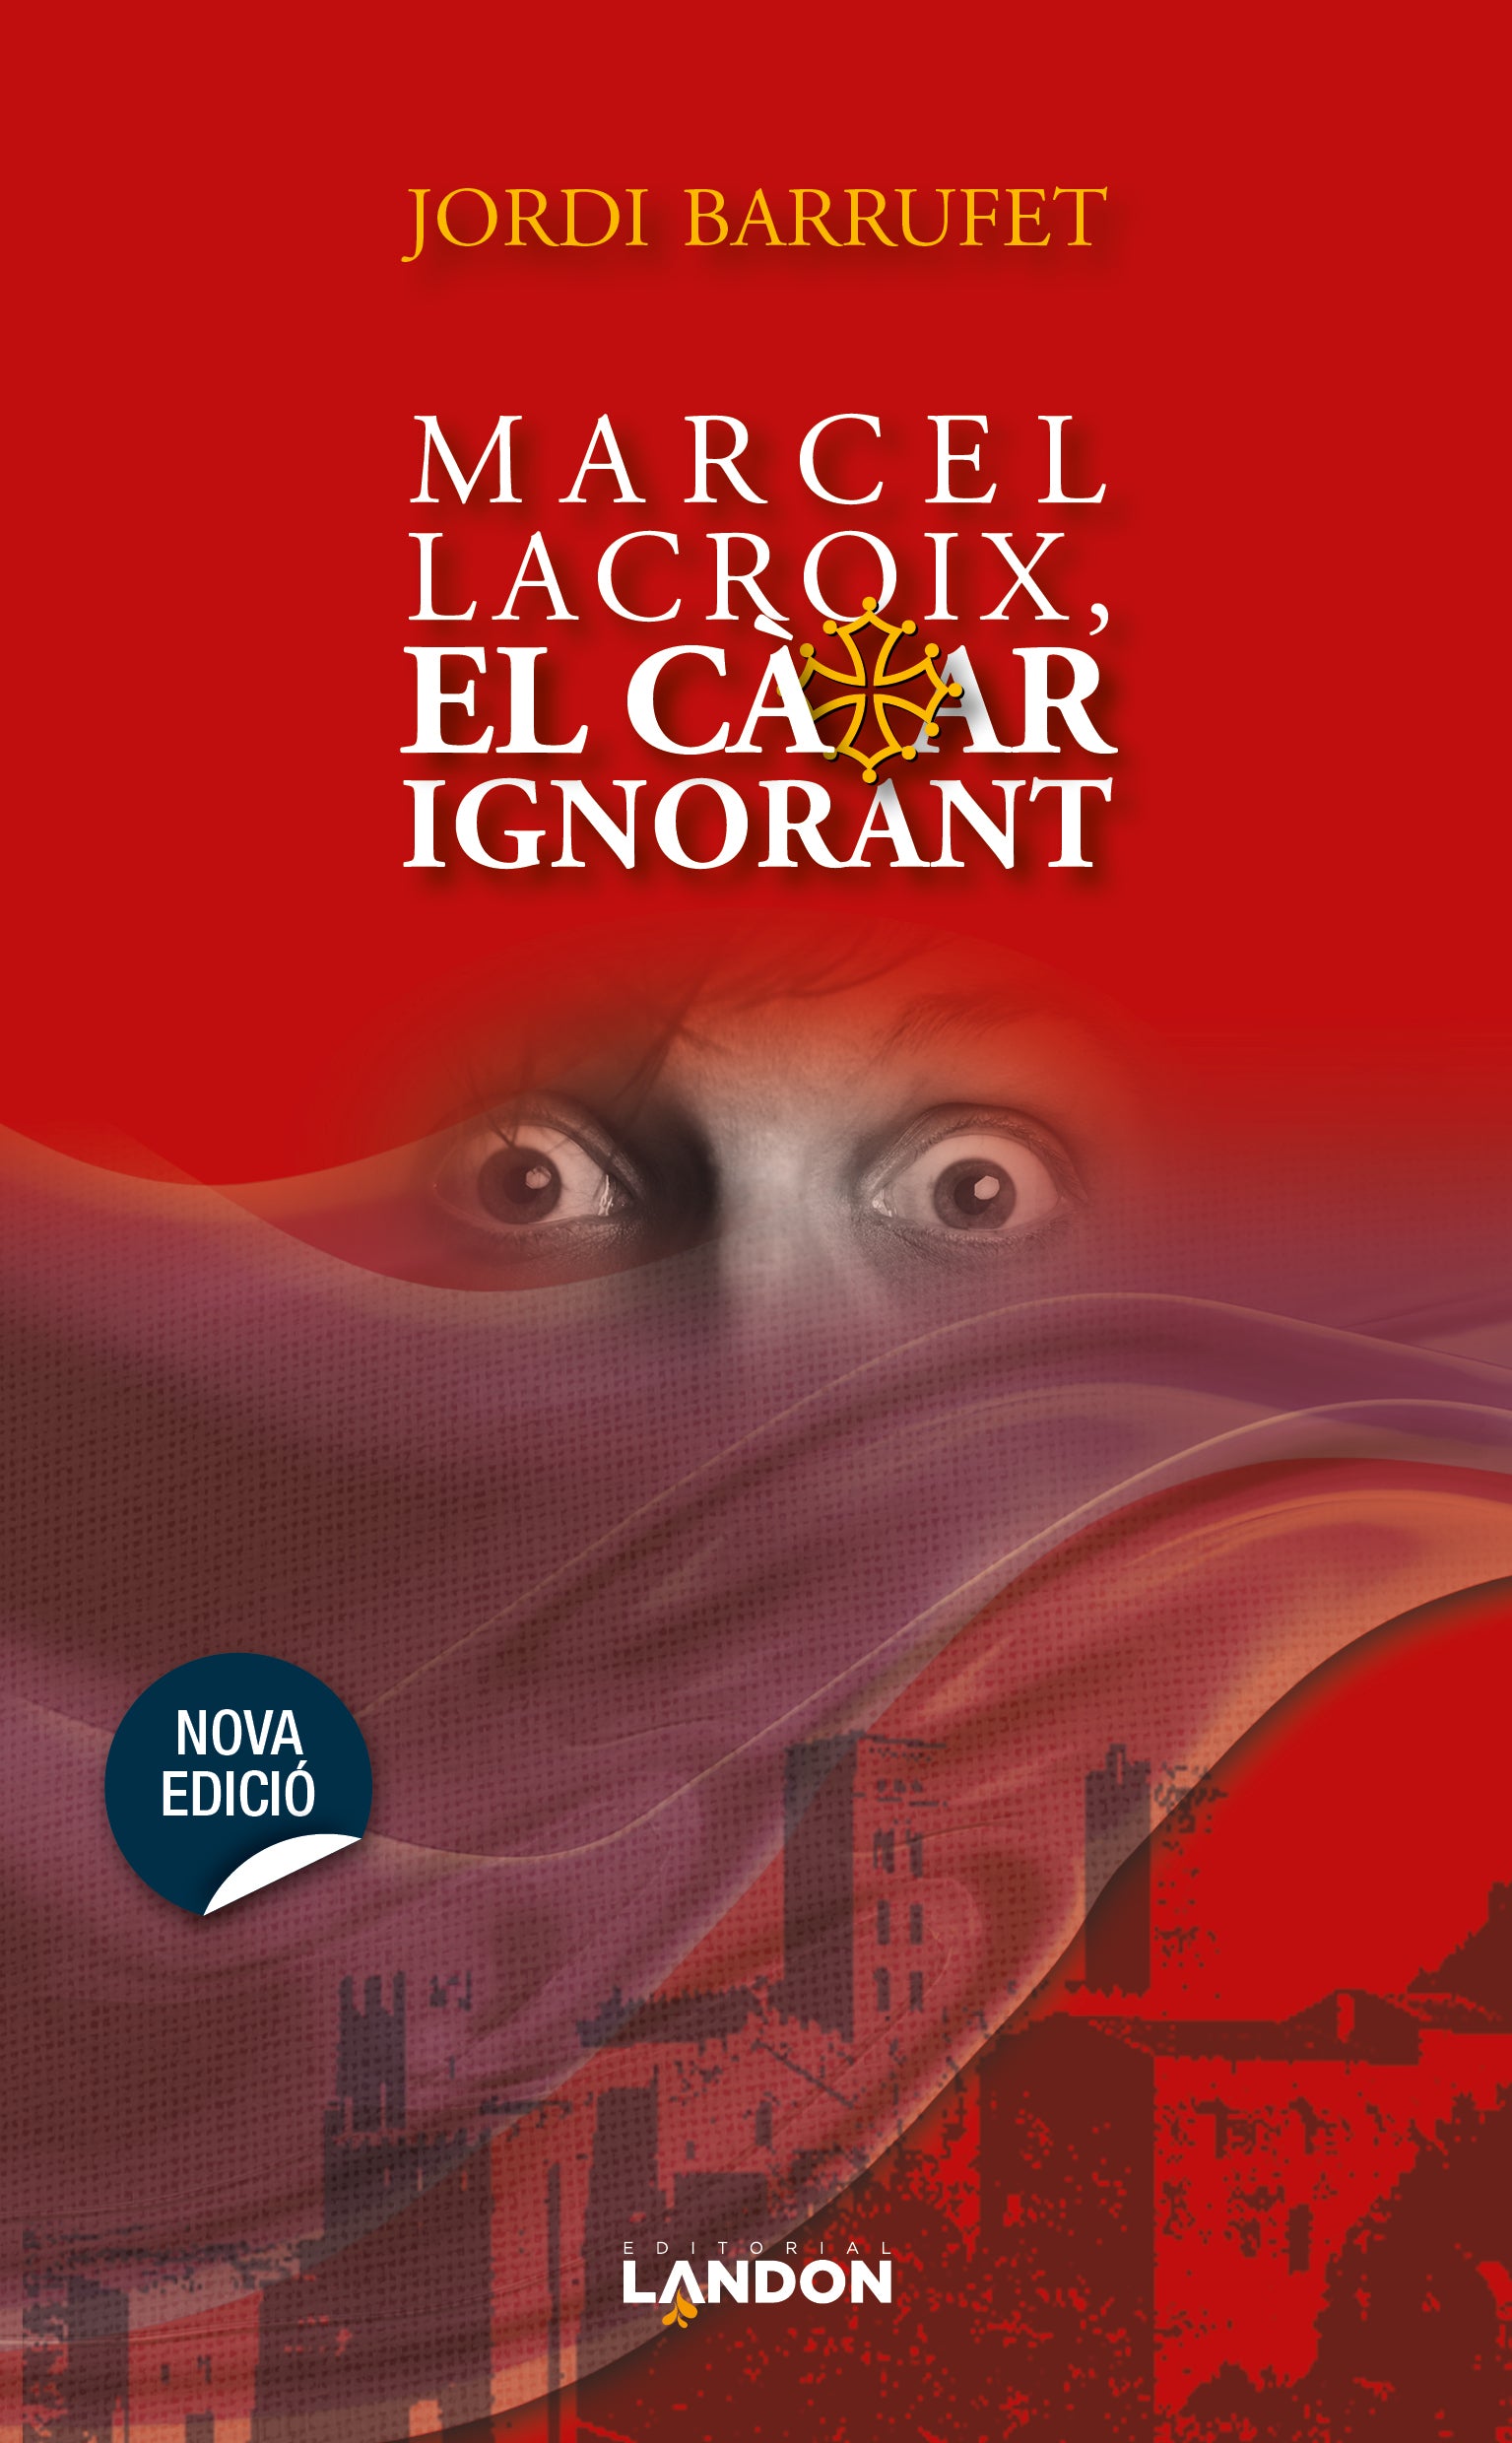 Marcel Lacroix, El Càtar Ignorant, nova edició de la Novela històrica d’Aventures de Jordi Barrufet